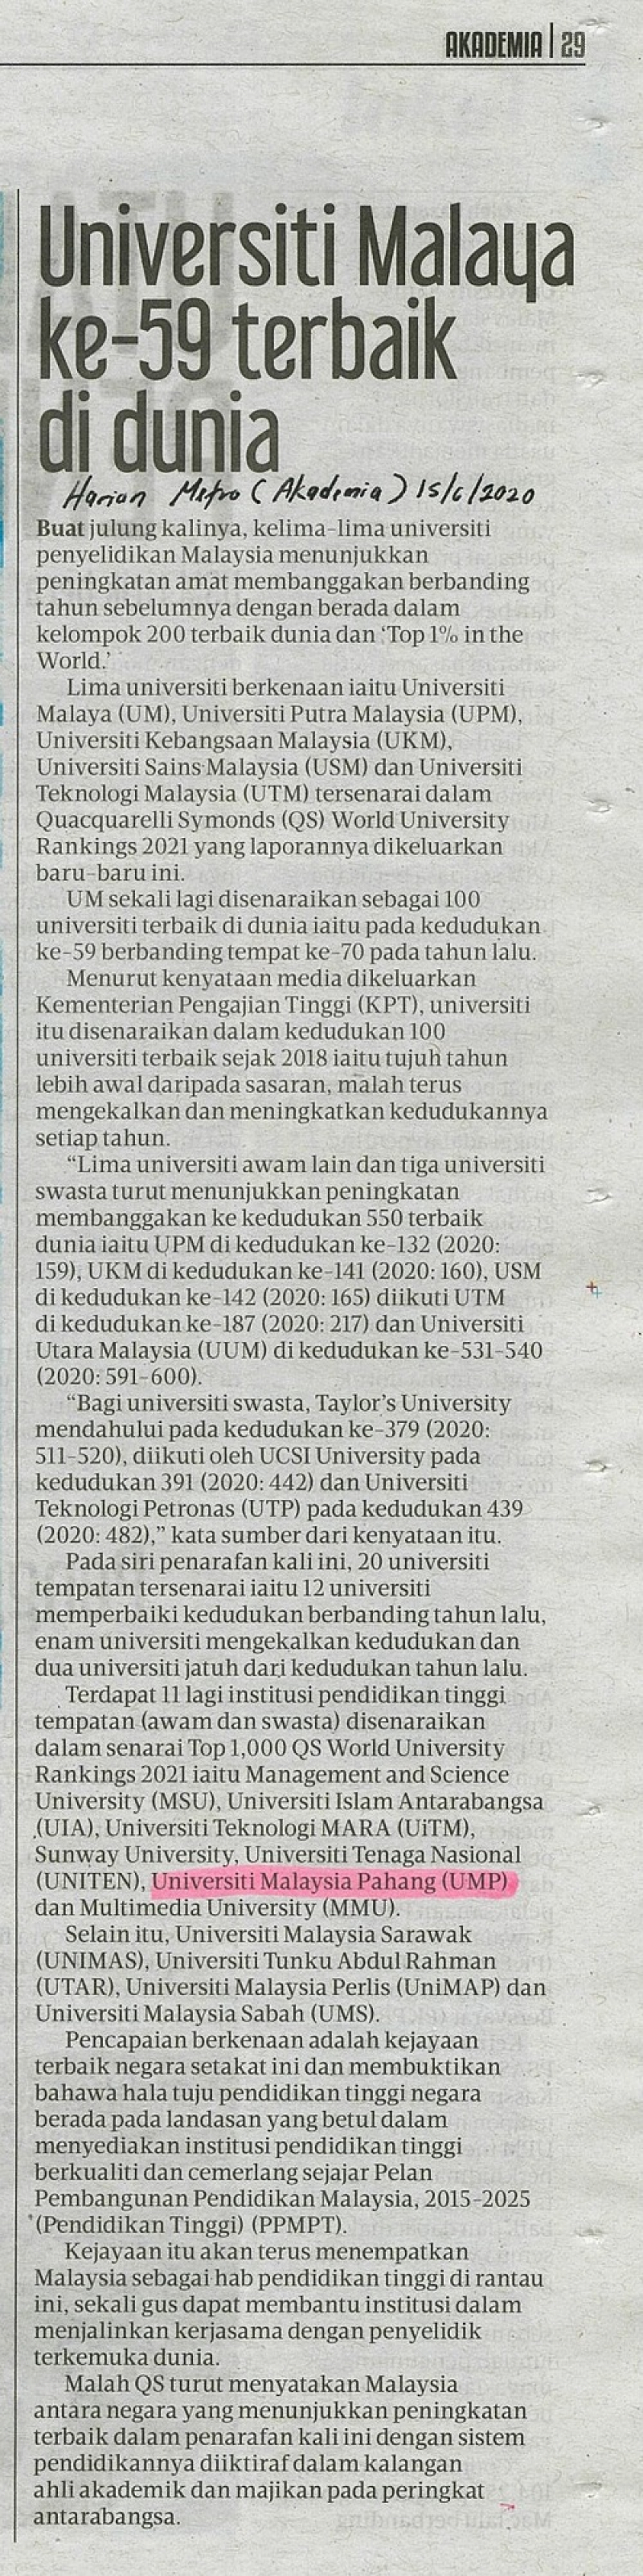 Universiti Malaya ke-59 terbaik di dunia